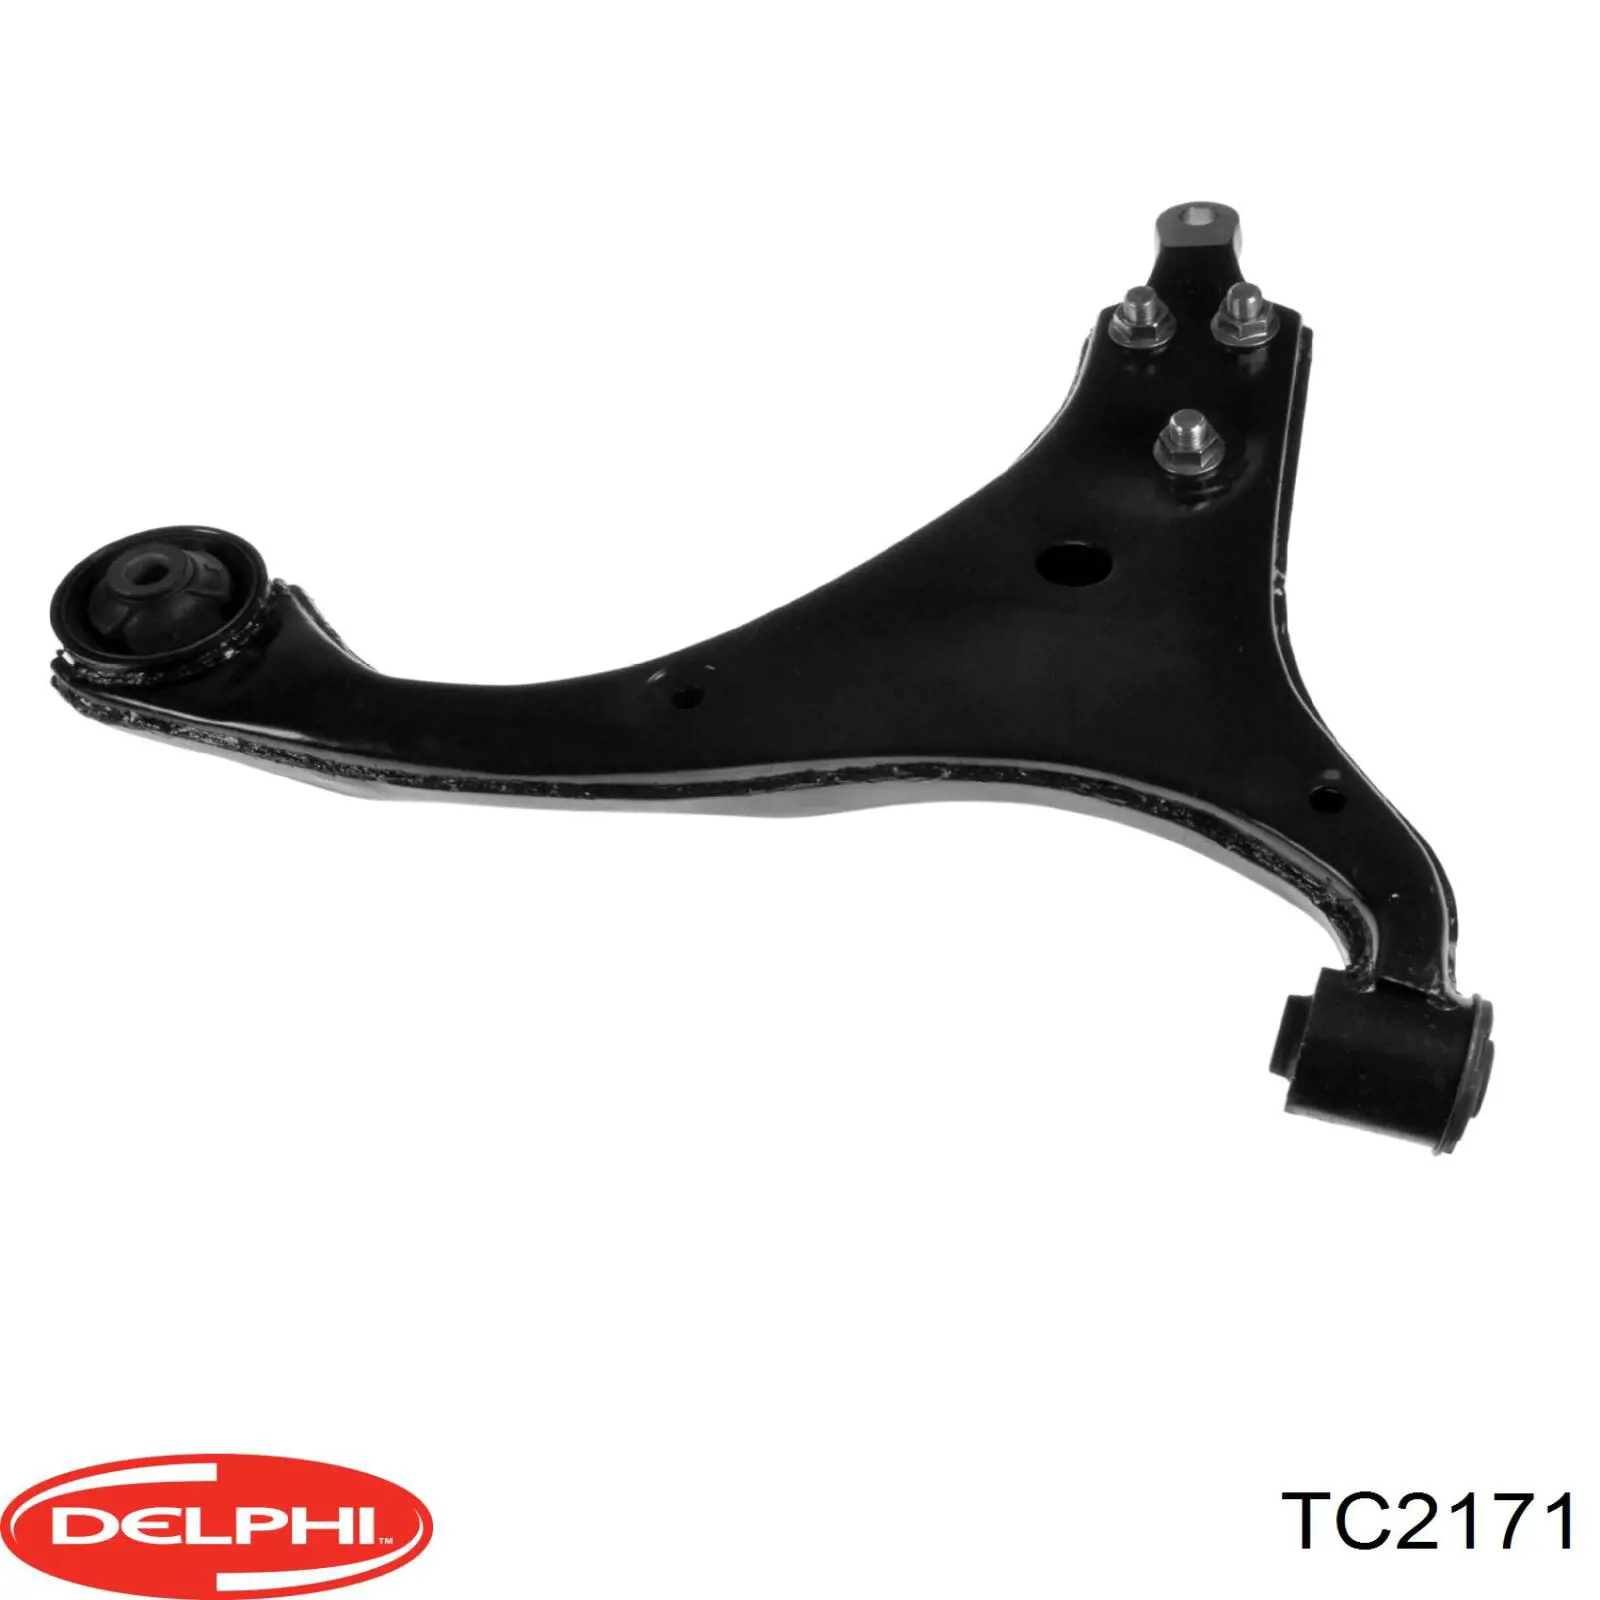 TC2171 Delphi barra oscilante, suspensión de ruedas delantera, inferior izquierda